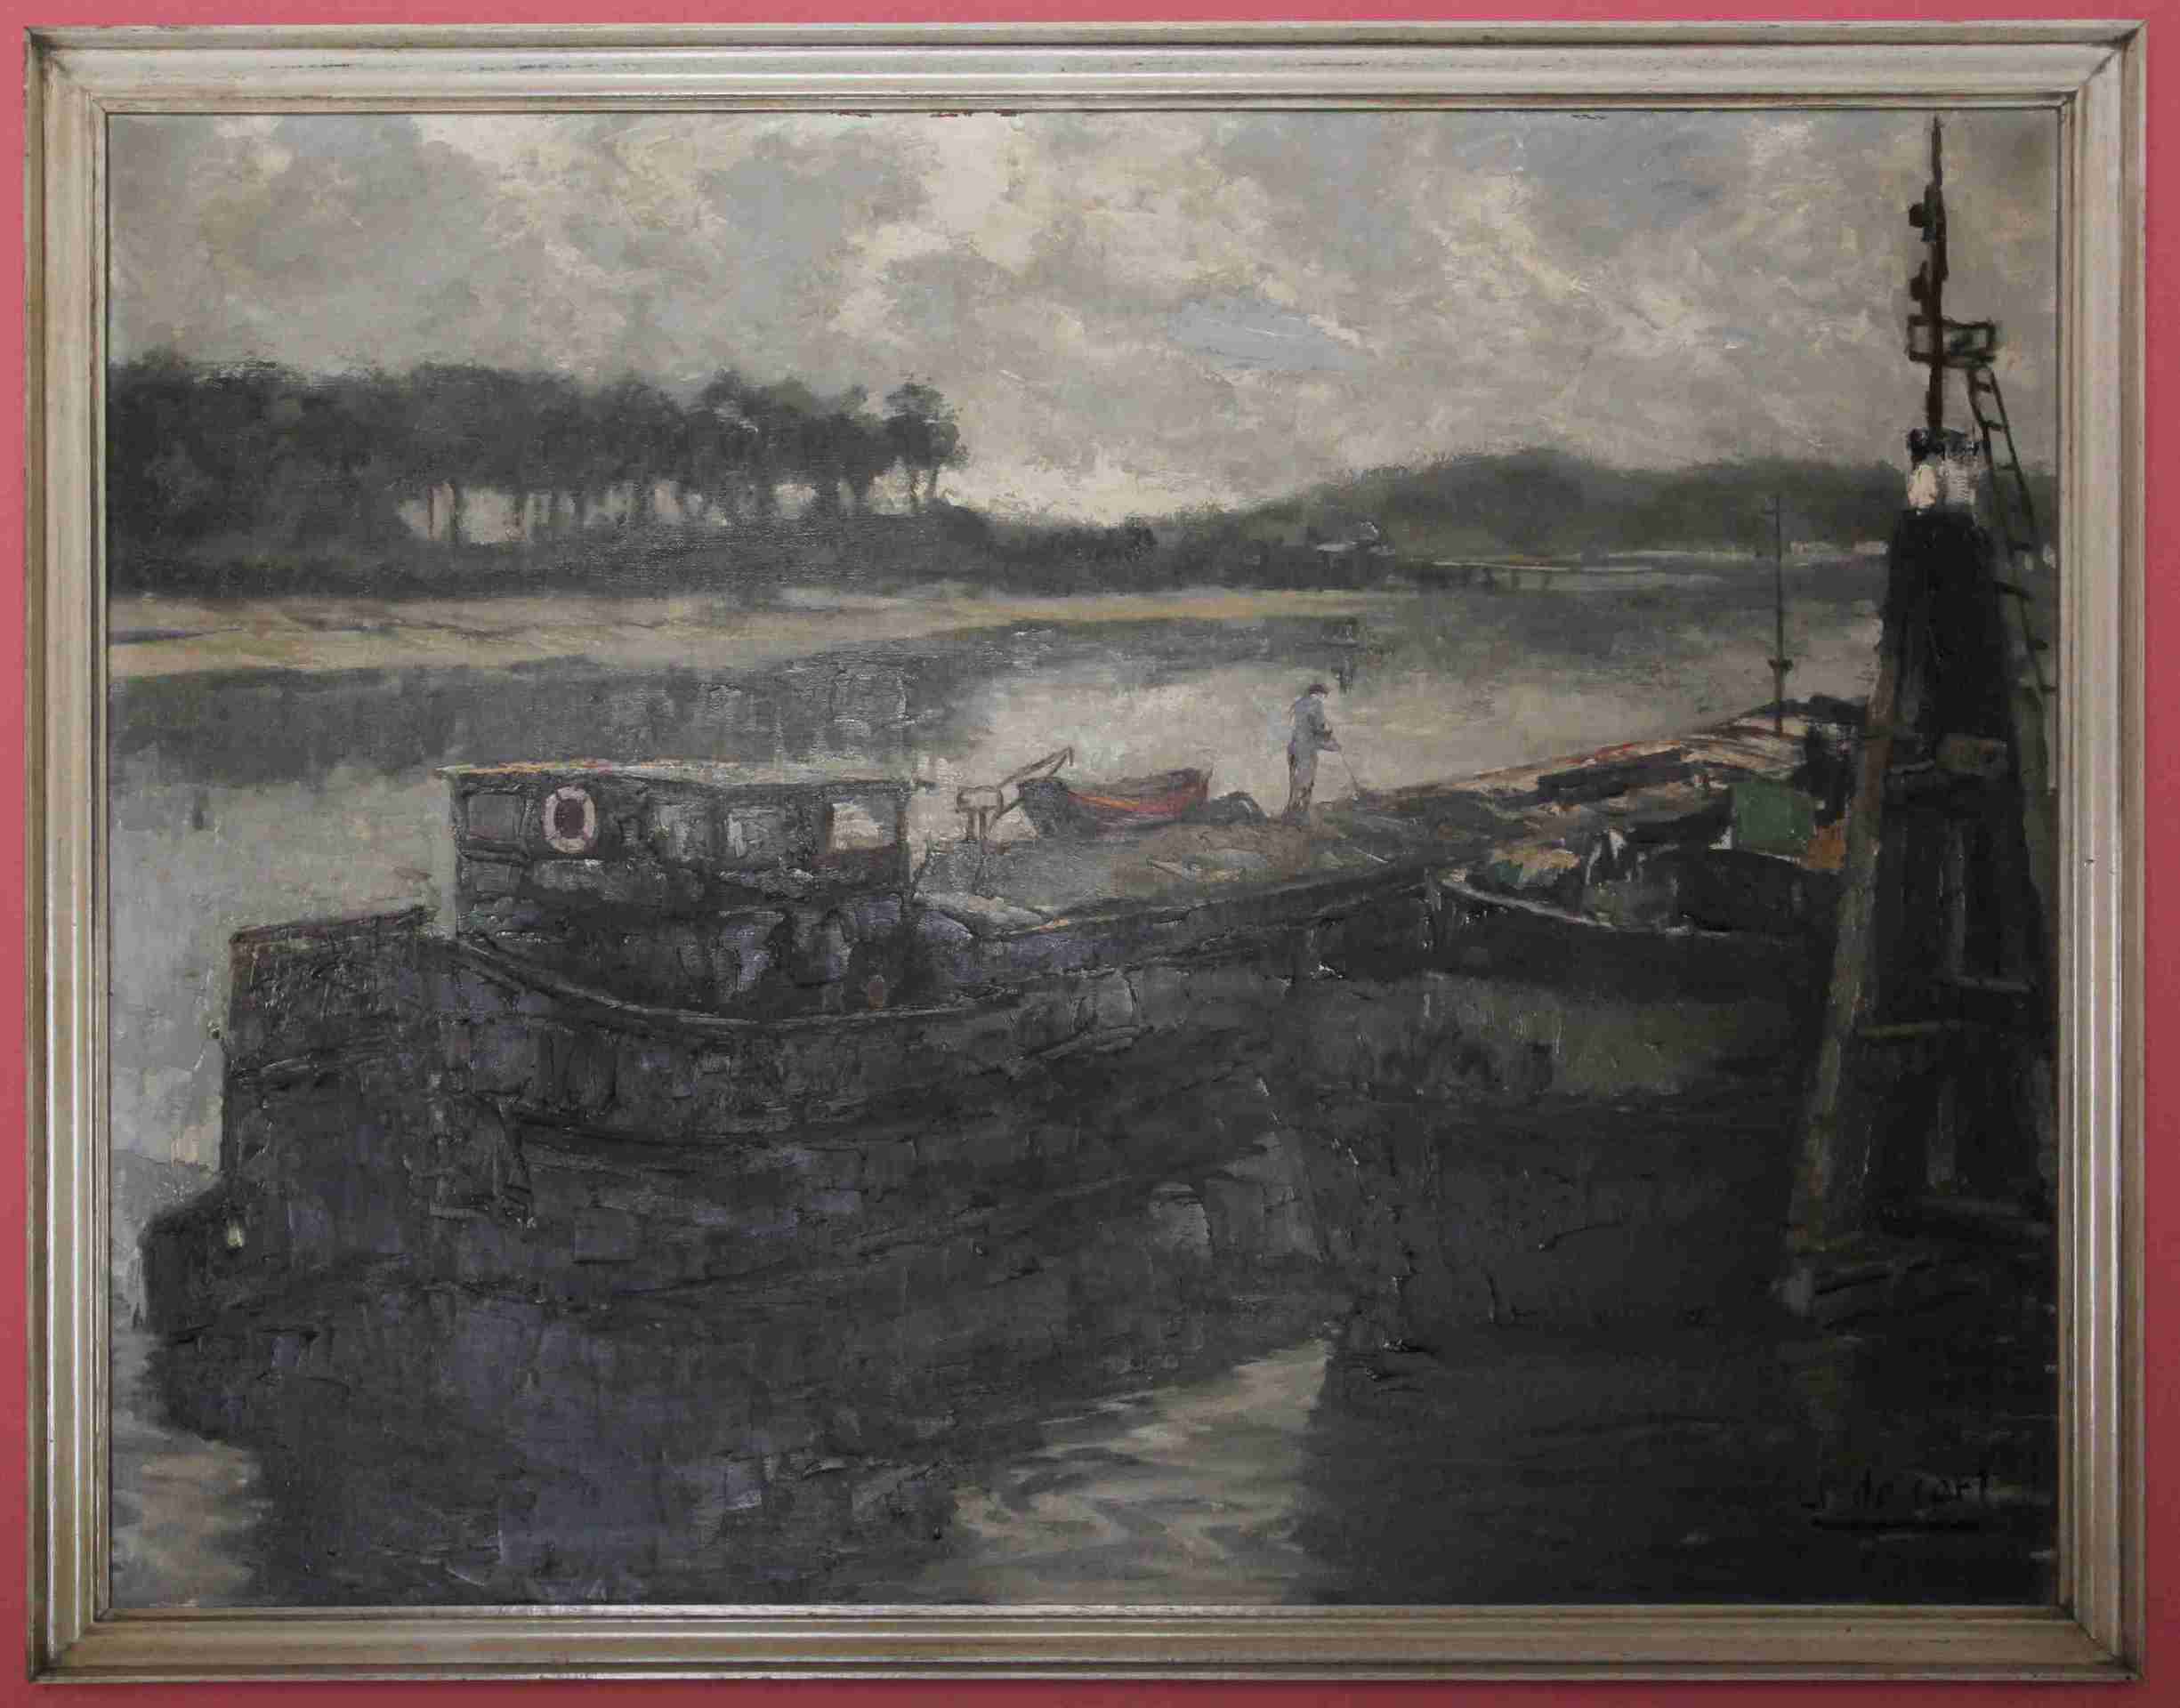 Lodě. J De Carl. Olej na plátně. 96 x 76 cm